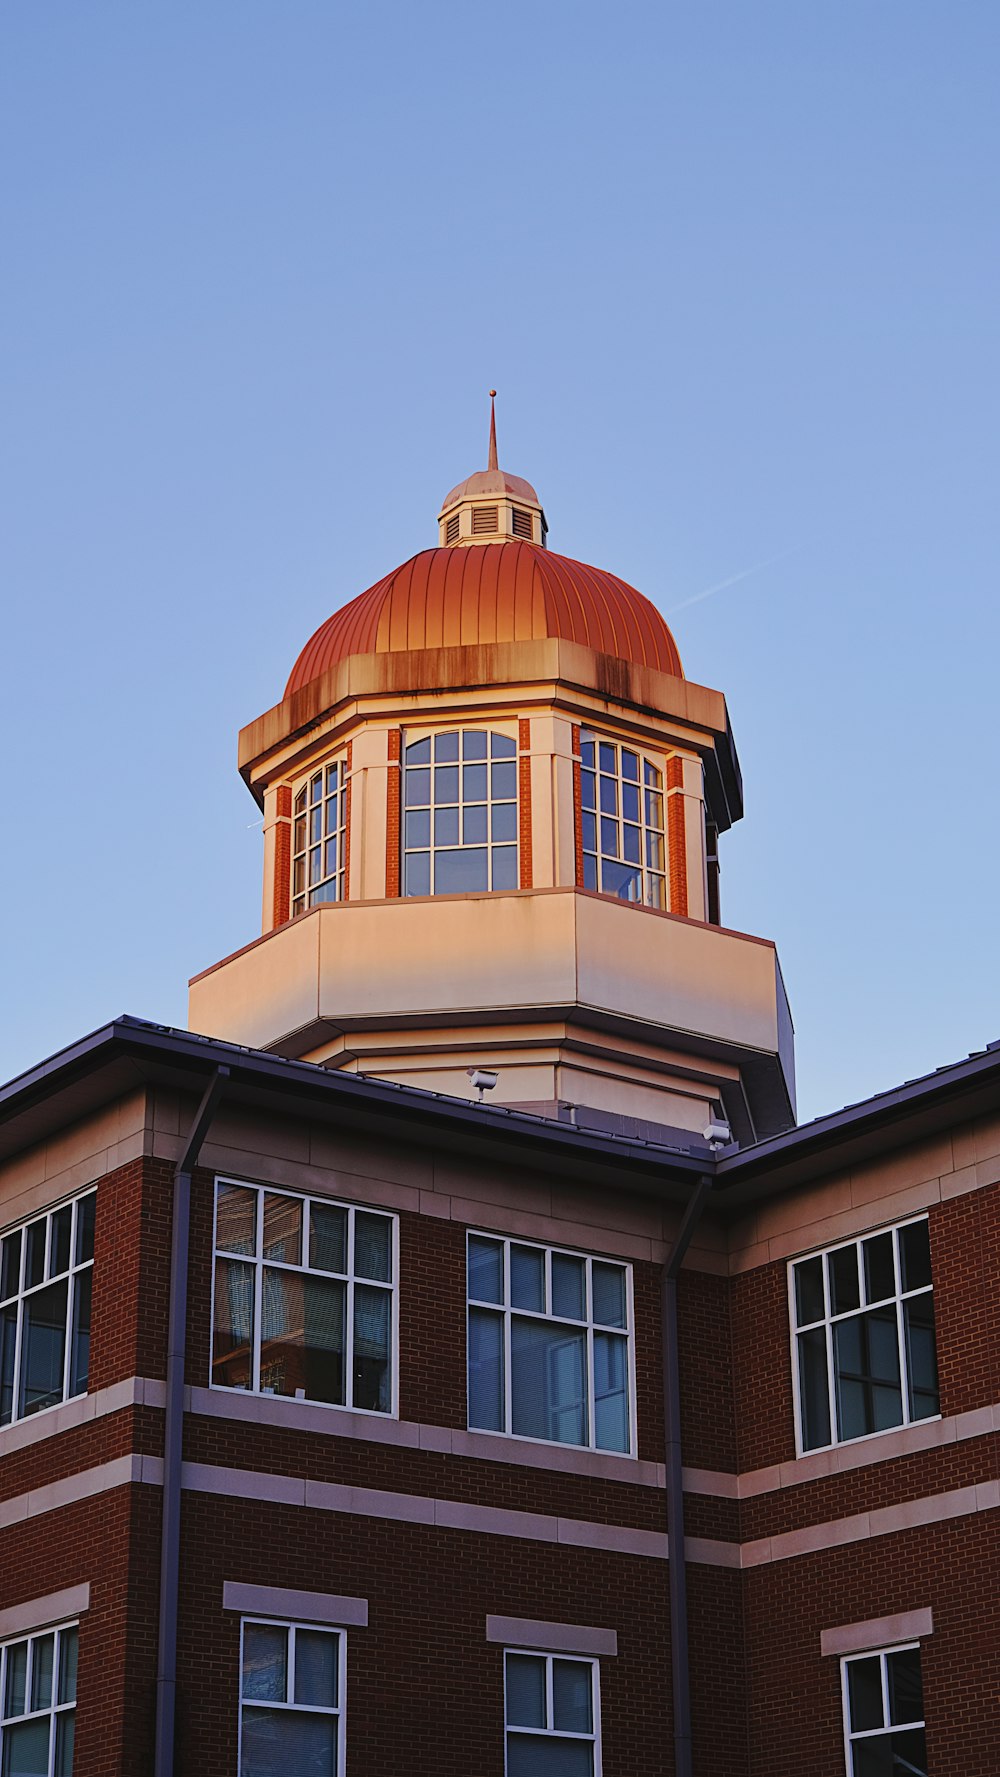 Un edificio di mattoni rossi con una cupola in cima